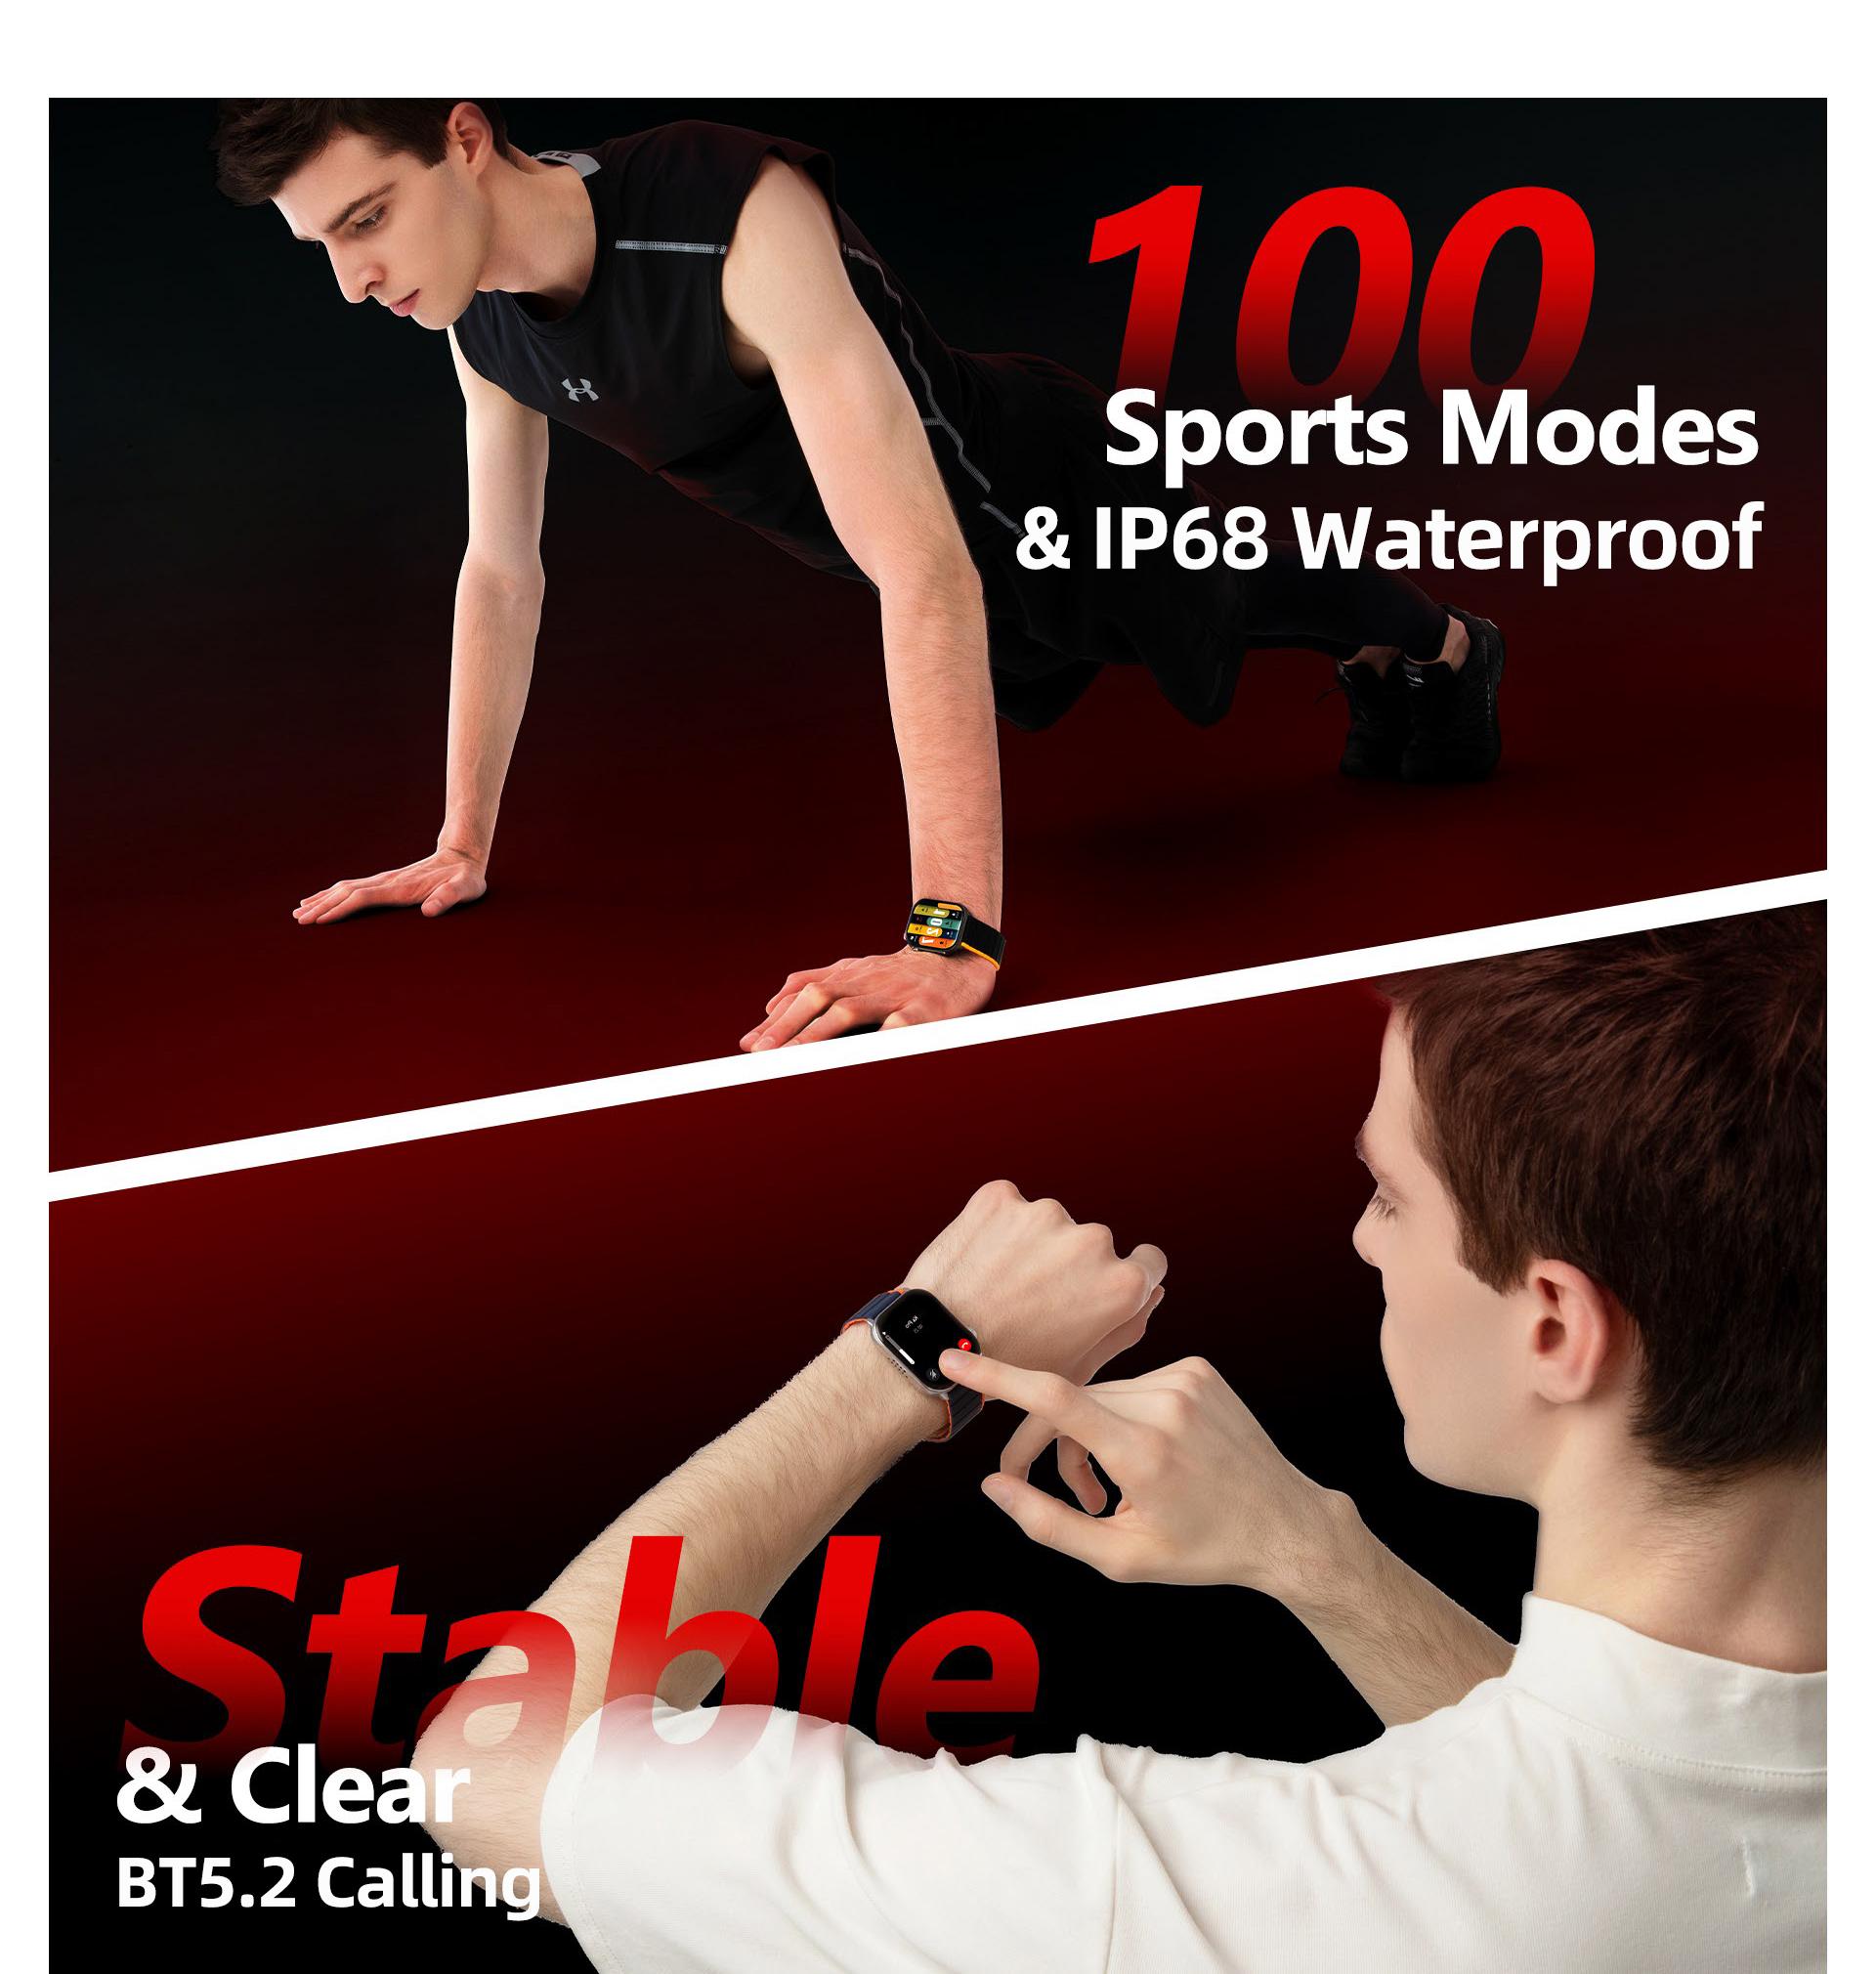 100 modos esportivos integrados, incluindo corrida, ciclismo, natação e ioga, etc